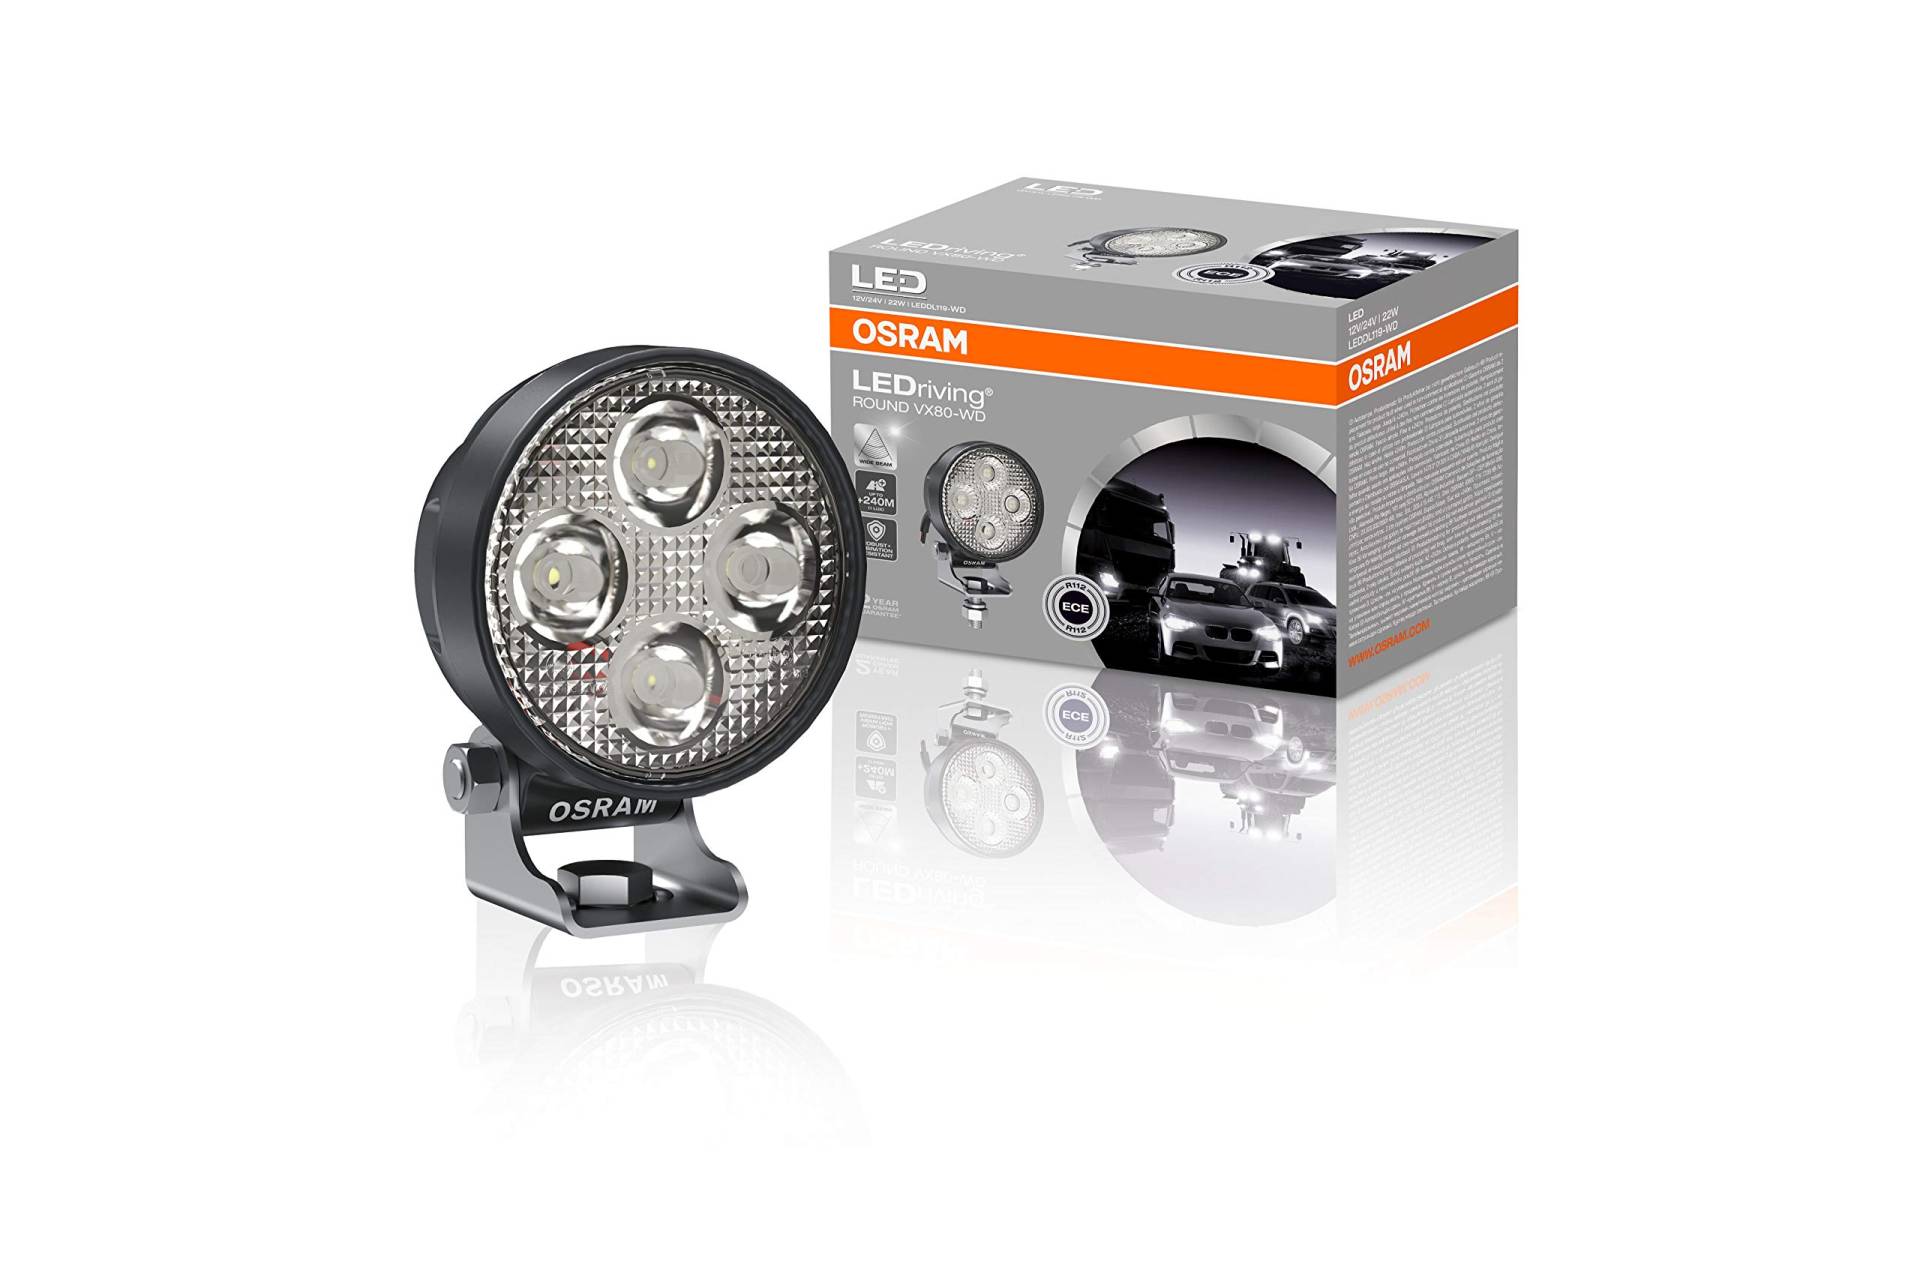 Osram LEDriving ROUND VX80-WD, LED Zusatzscheinwerfer für Nahfeldbeleuchtung, Wide, 1150 Lumen, Lichtstrahl bis zu 240 m, LED Arbeitsscheinwerfer, ECE Zulassung LEDDL119-WD von Osram